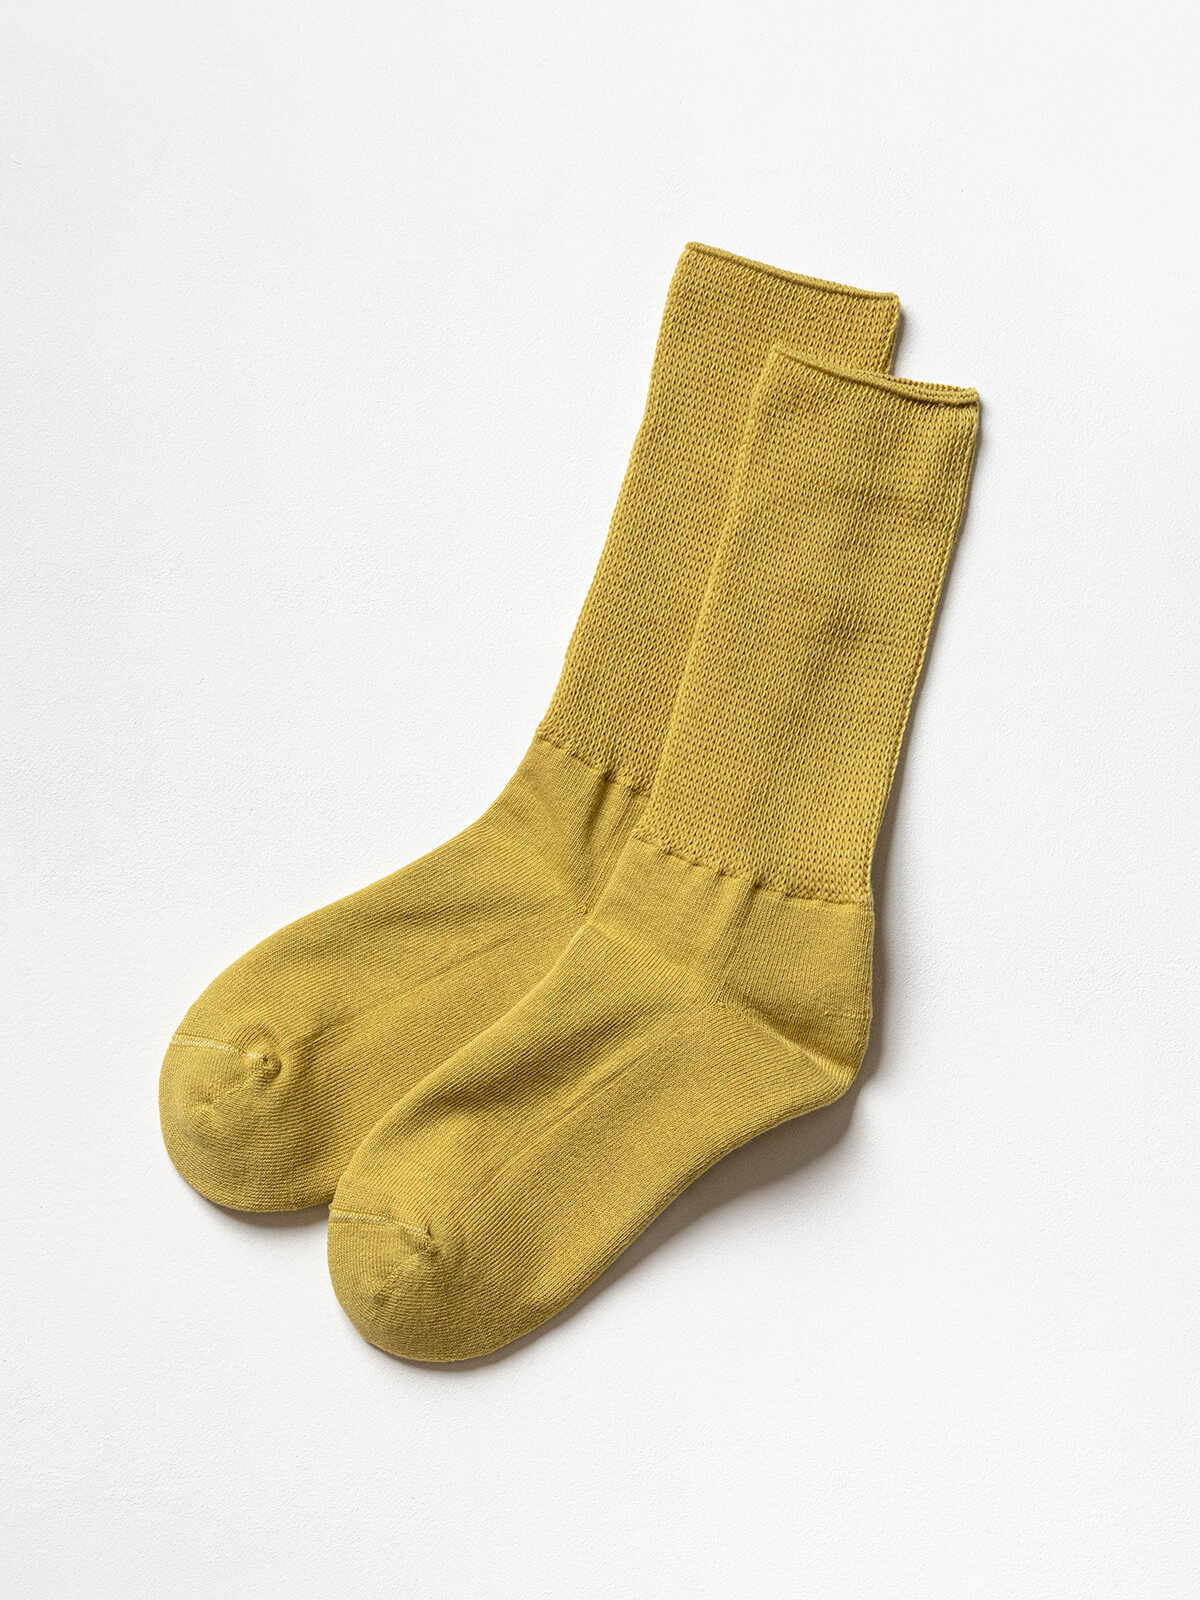 当たりつきギフト専用靴下のLUCKY SOCKS（ラッキーソックス）のRelax Pile Socks（リラックスパイルソックス）のマスタード